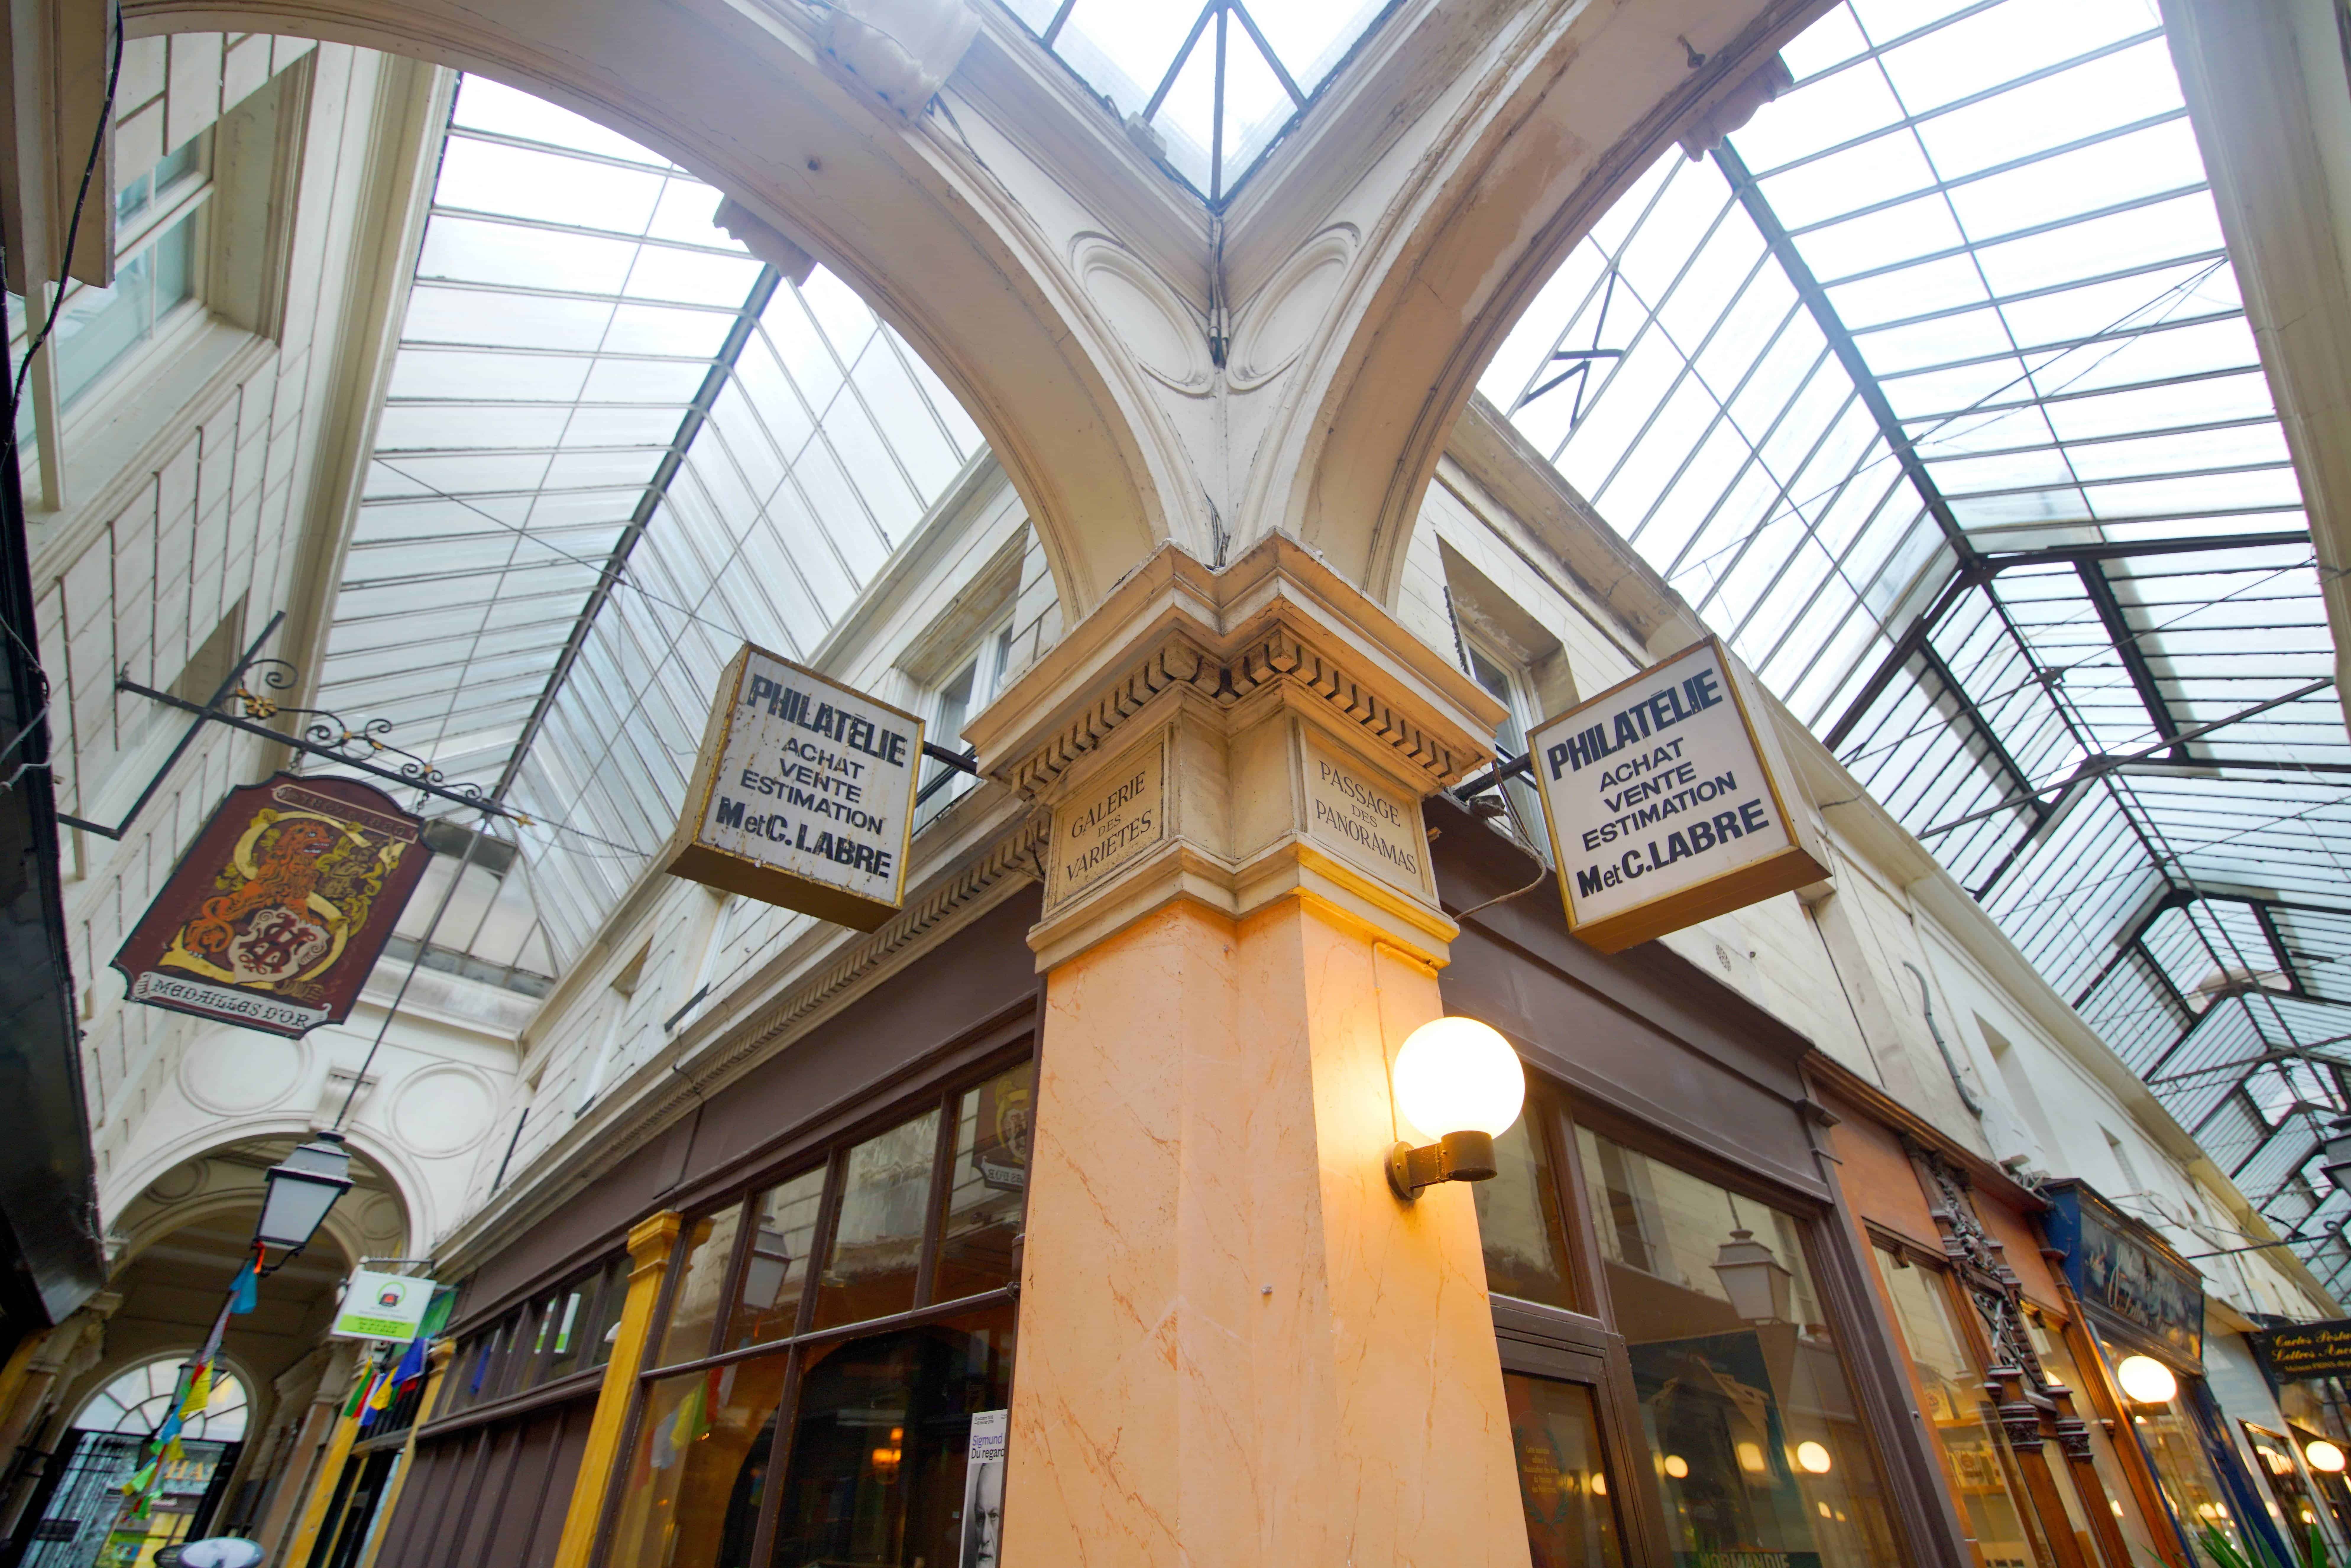 Passage des Panoramas ceiling in Paris